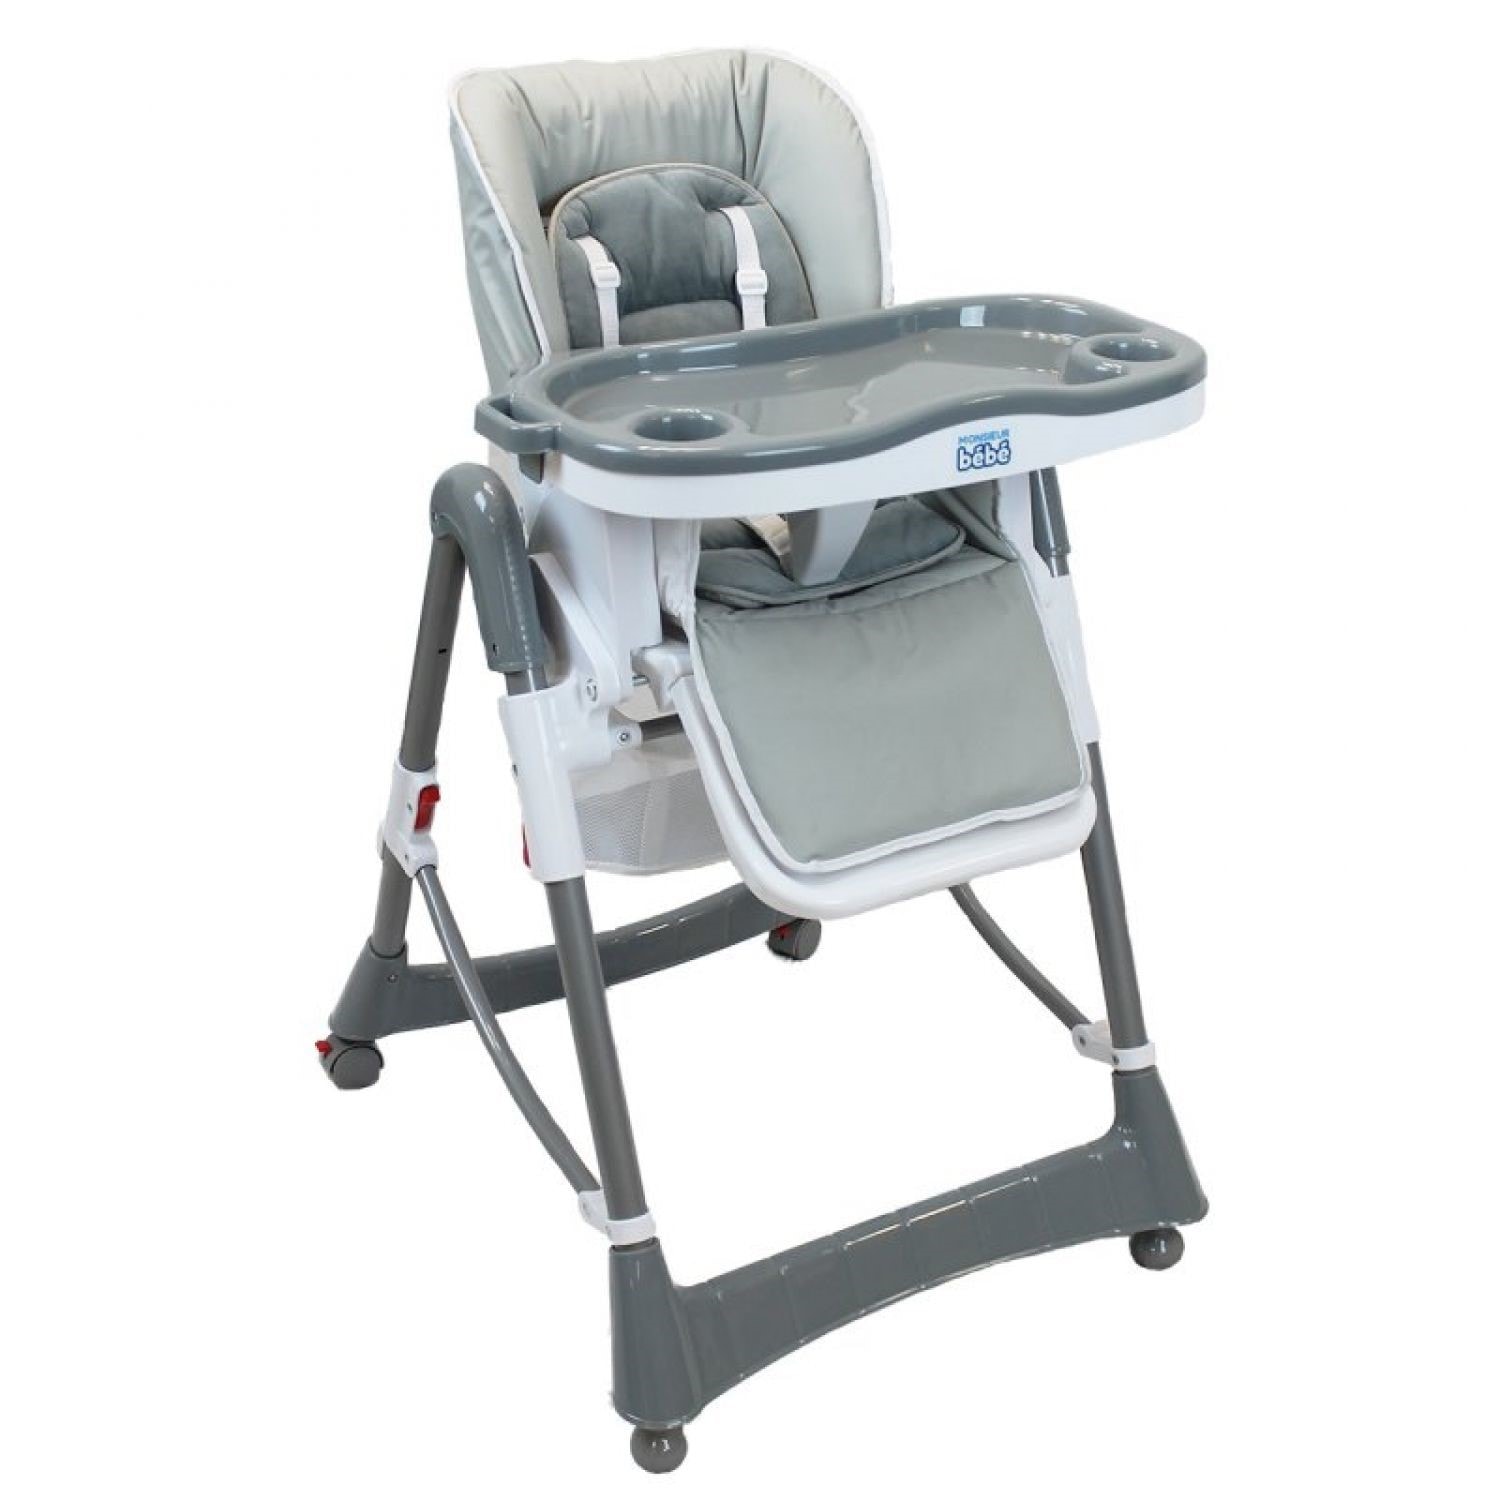 Chaise haute bébé, enfant pliable, réglable hauteur, dossier et